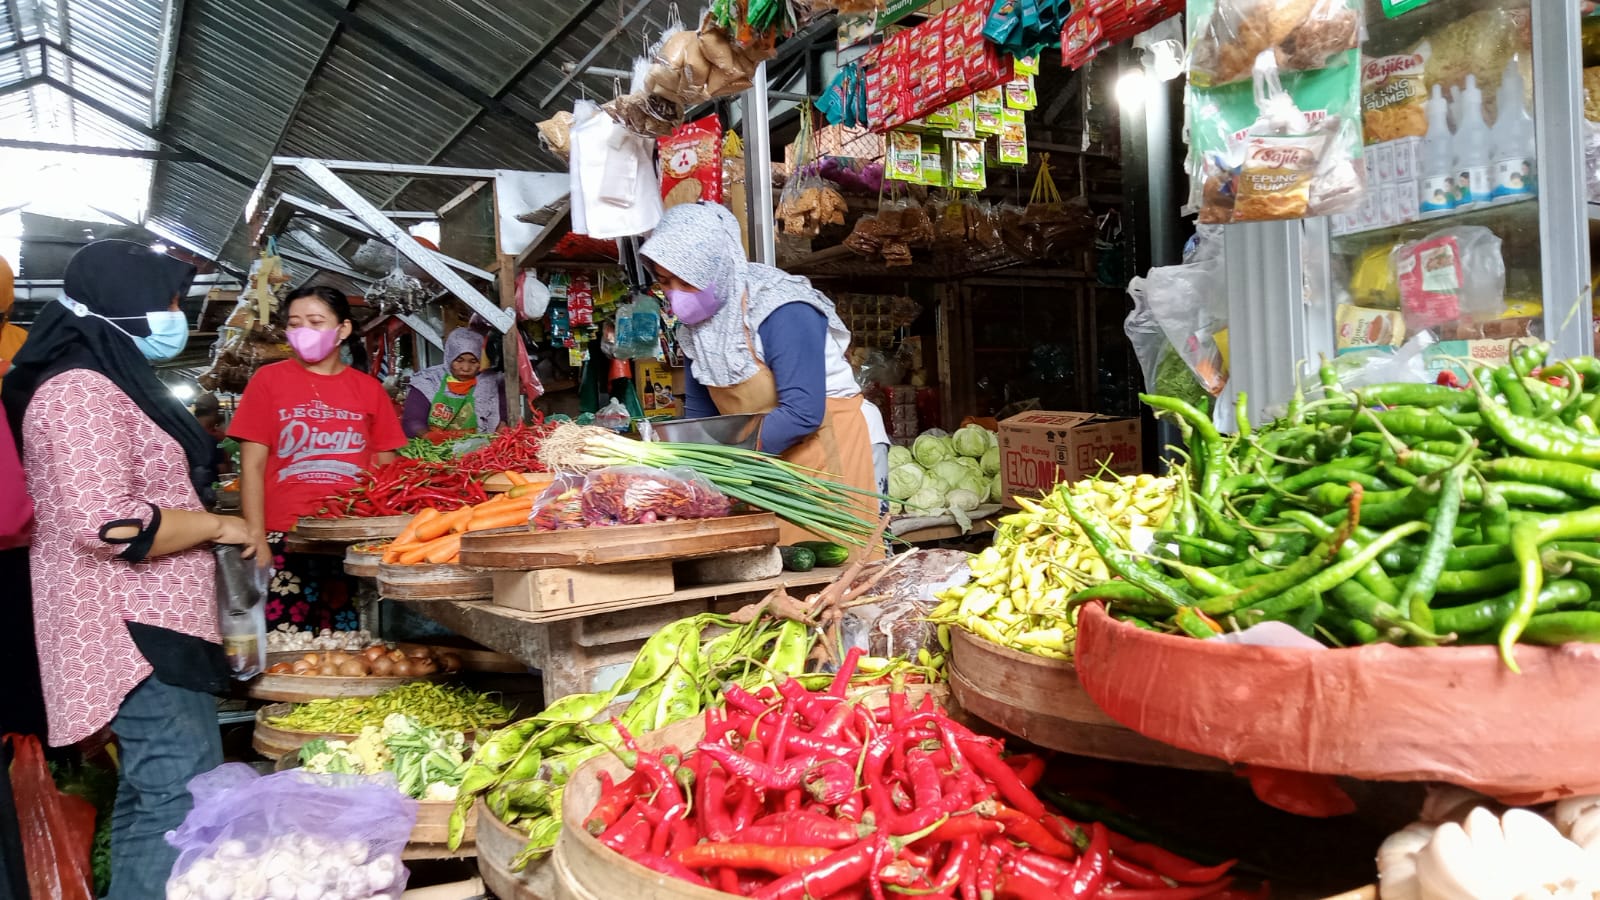 Pedagang cabai dan bahan pokok lainnya di Pasar Trenggalek